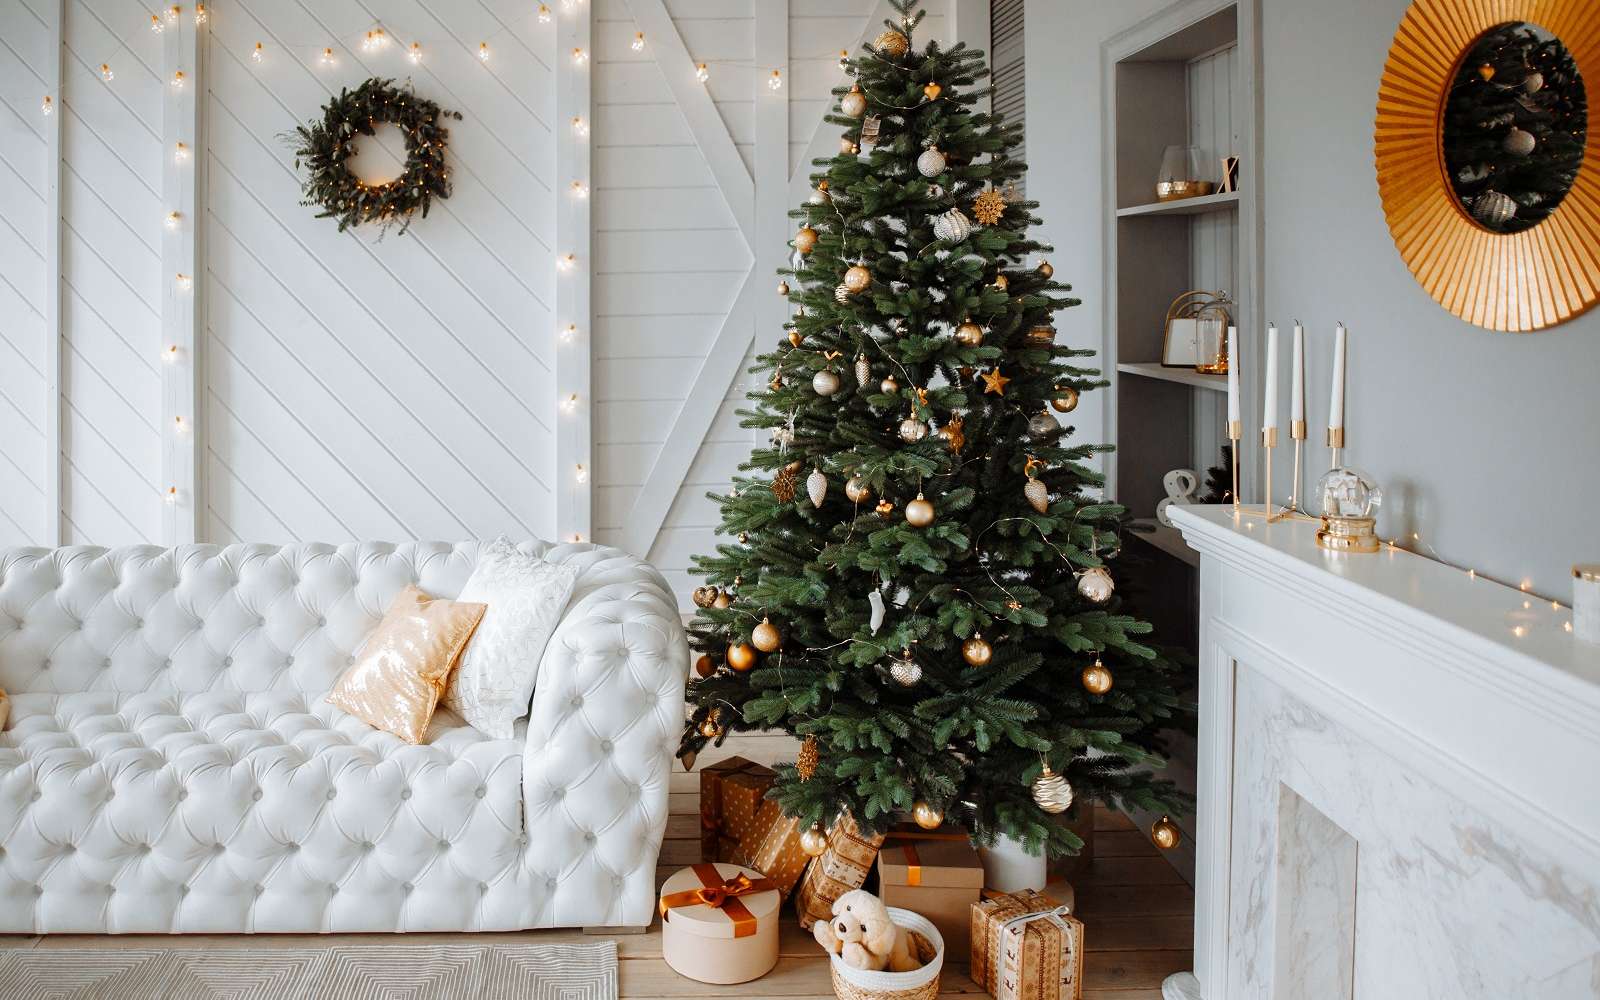 Décorez un sapin pour créer une ambiance festive de Noël. © Мария Балчугова, Adobe Stock